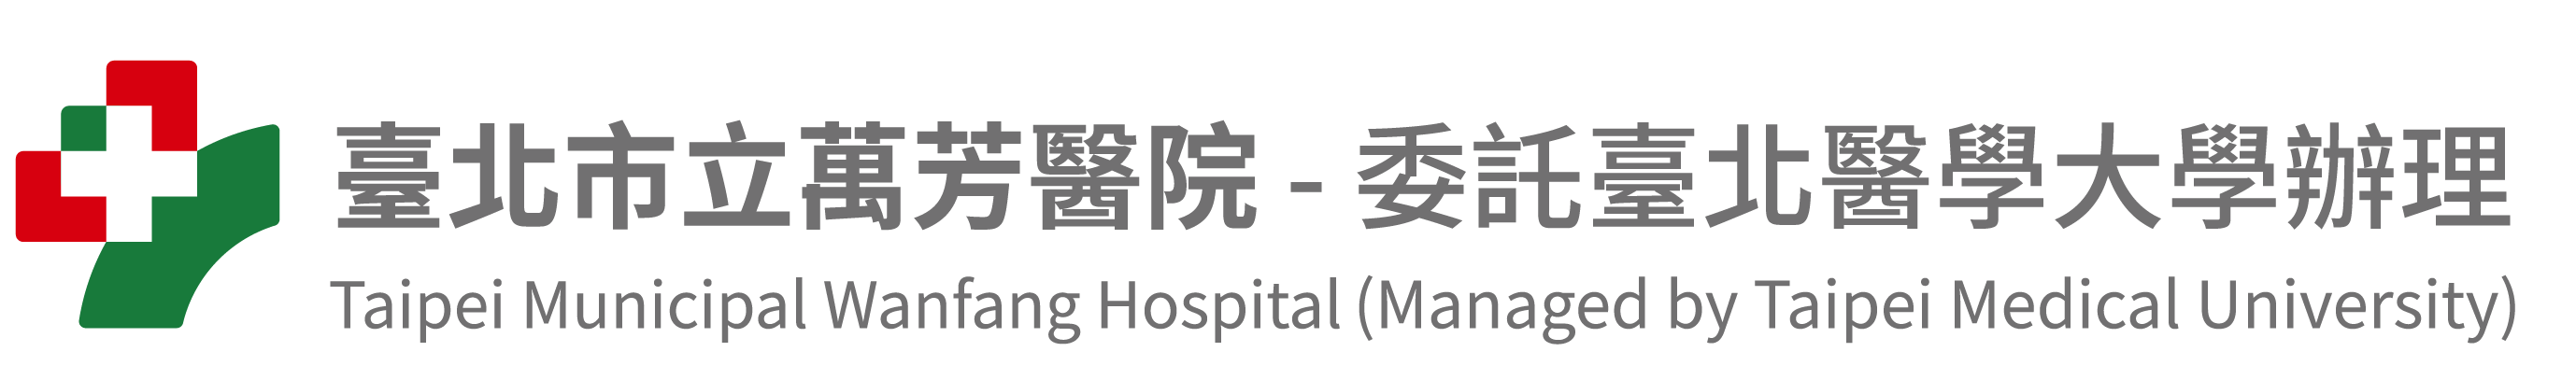 臺北市立萬芳醫院